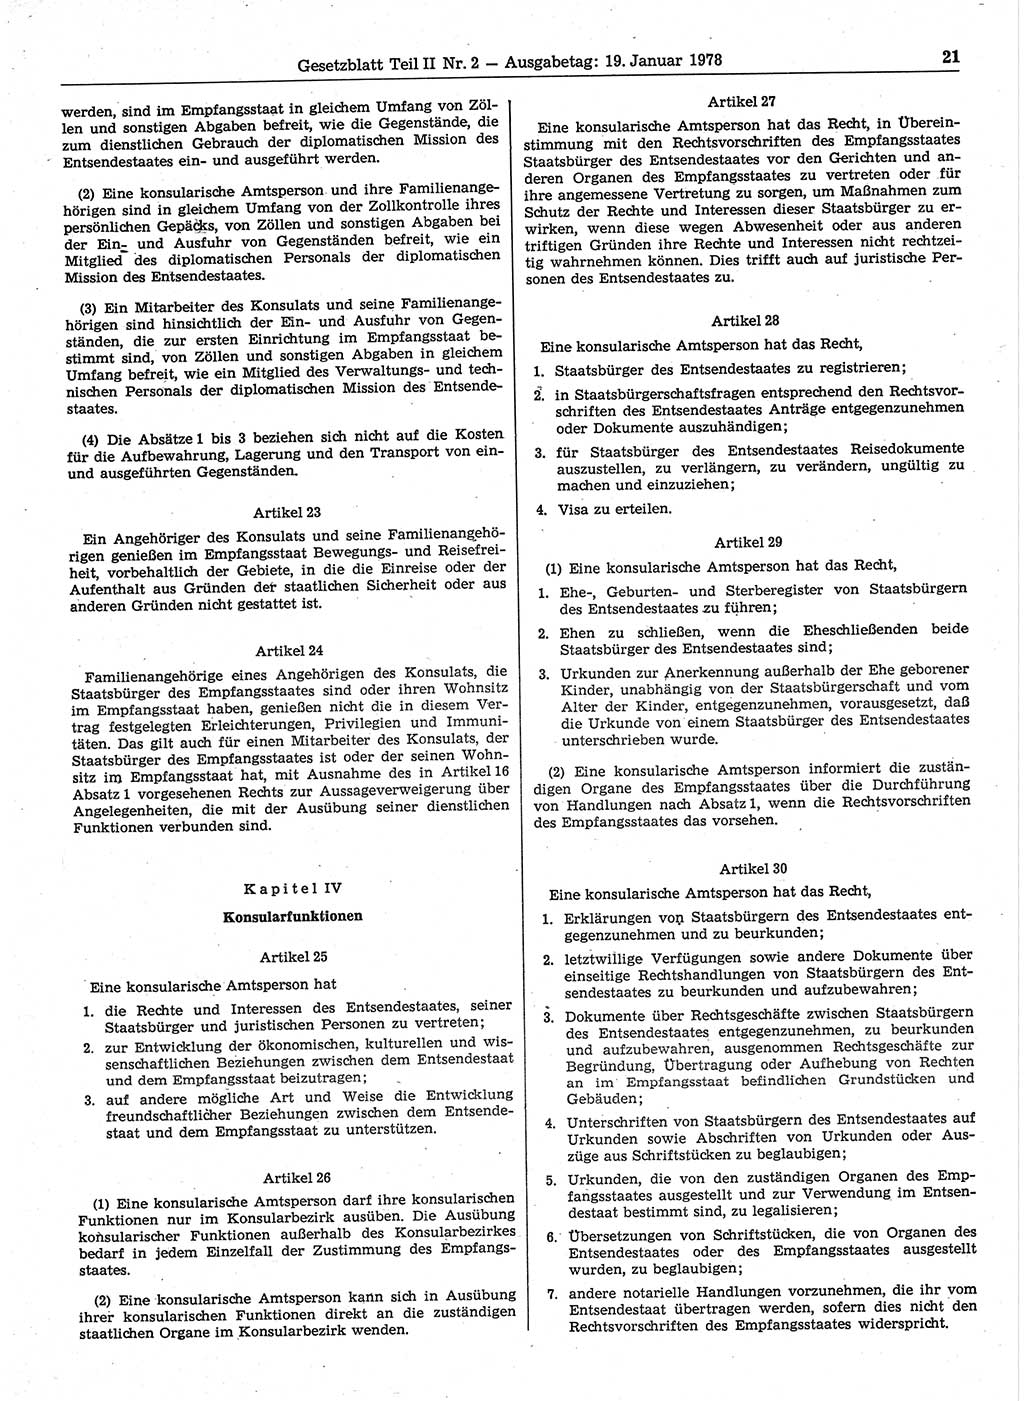 Gesetzblatt (GBl.) der Deutschen Demokratischen Republik (DDR) Teil ⅠⅠ 1978, Seite 21 (GBl. DDR ⅠⅠ 1978, S. 21)